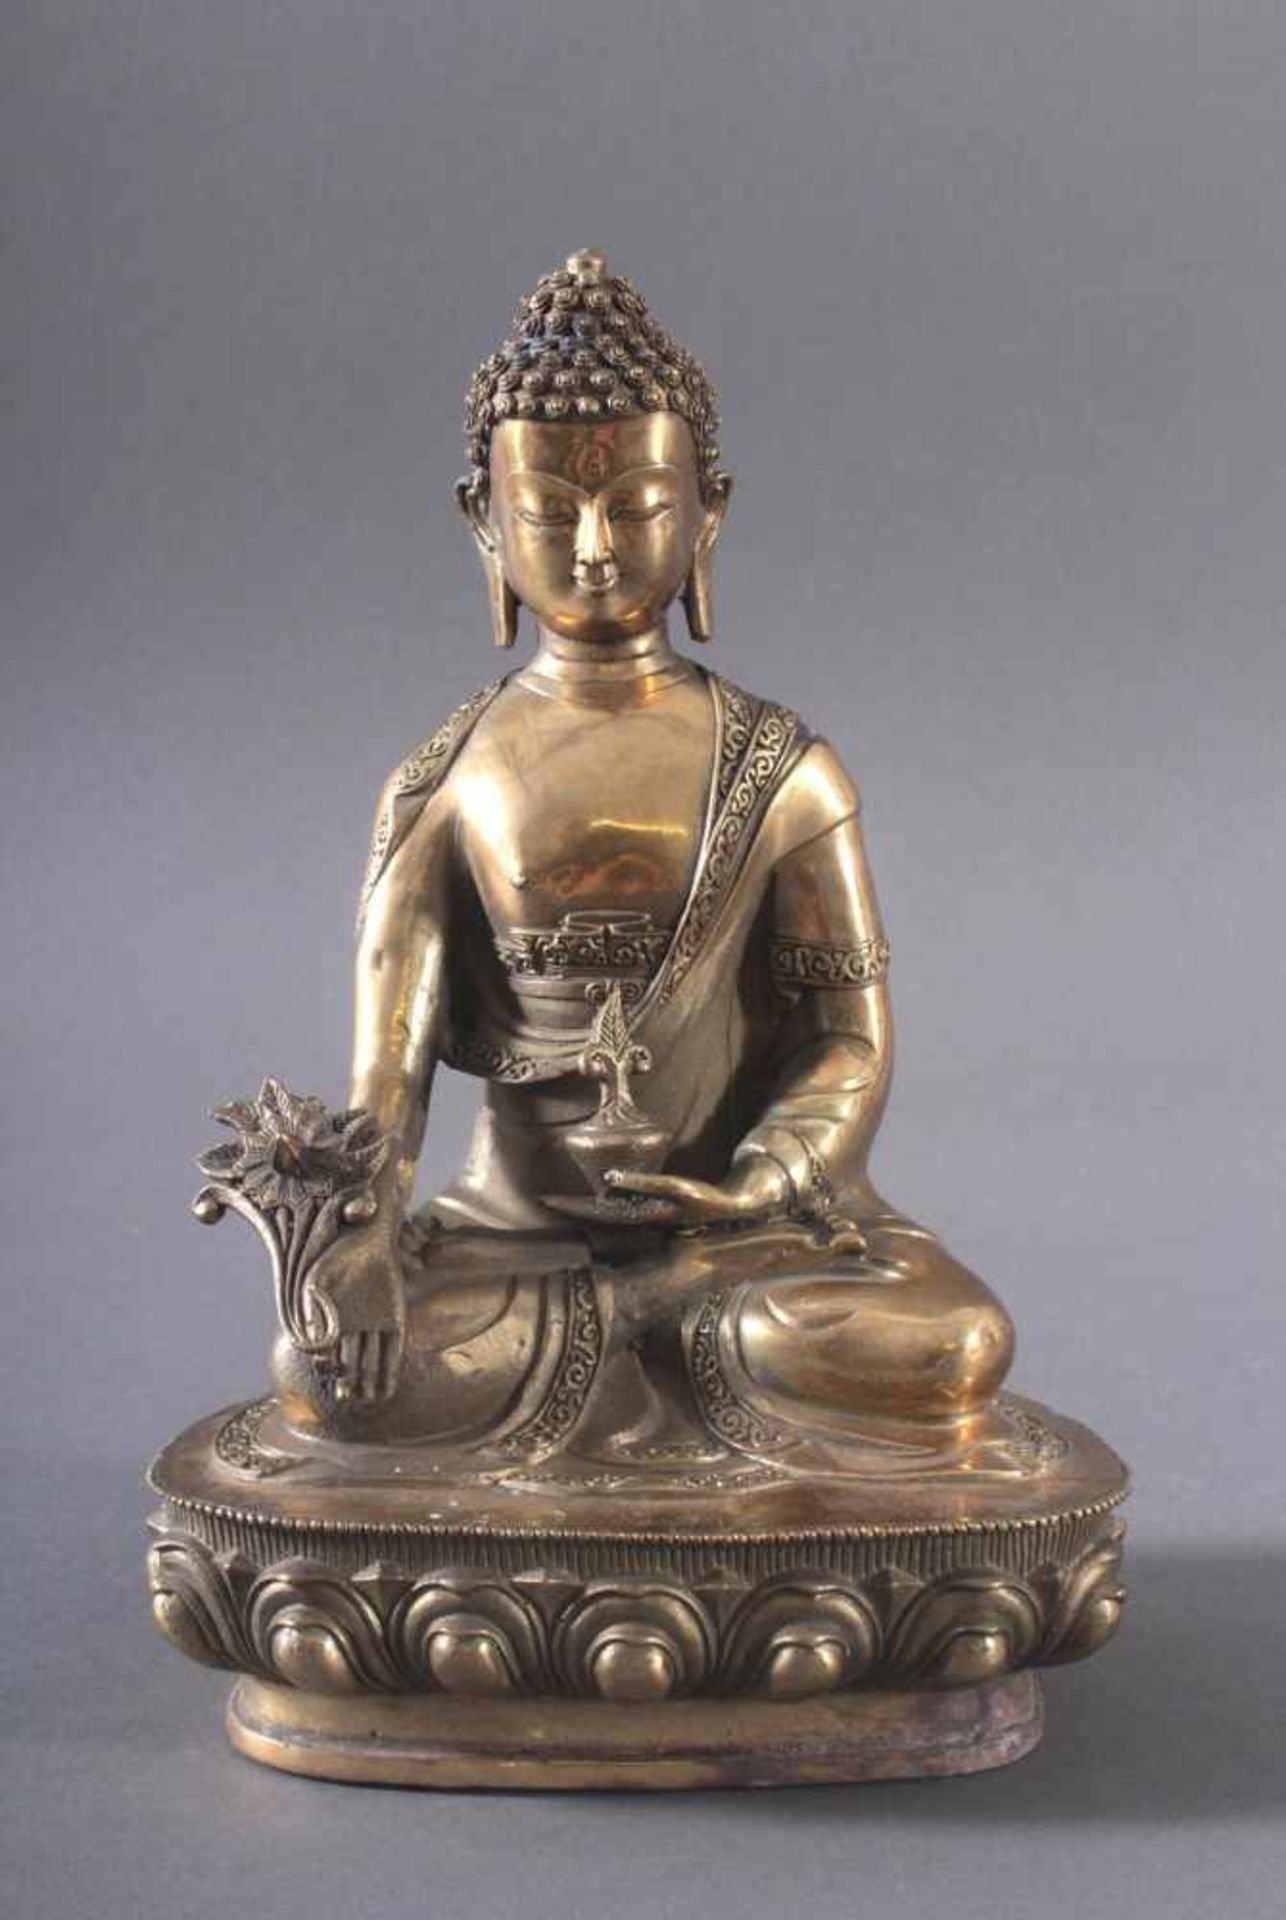 Medizin-Buddha, Indien, 20. Jh.Aus Messing gefertigt, Buddha in typischer Meditationshaltung auf